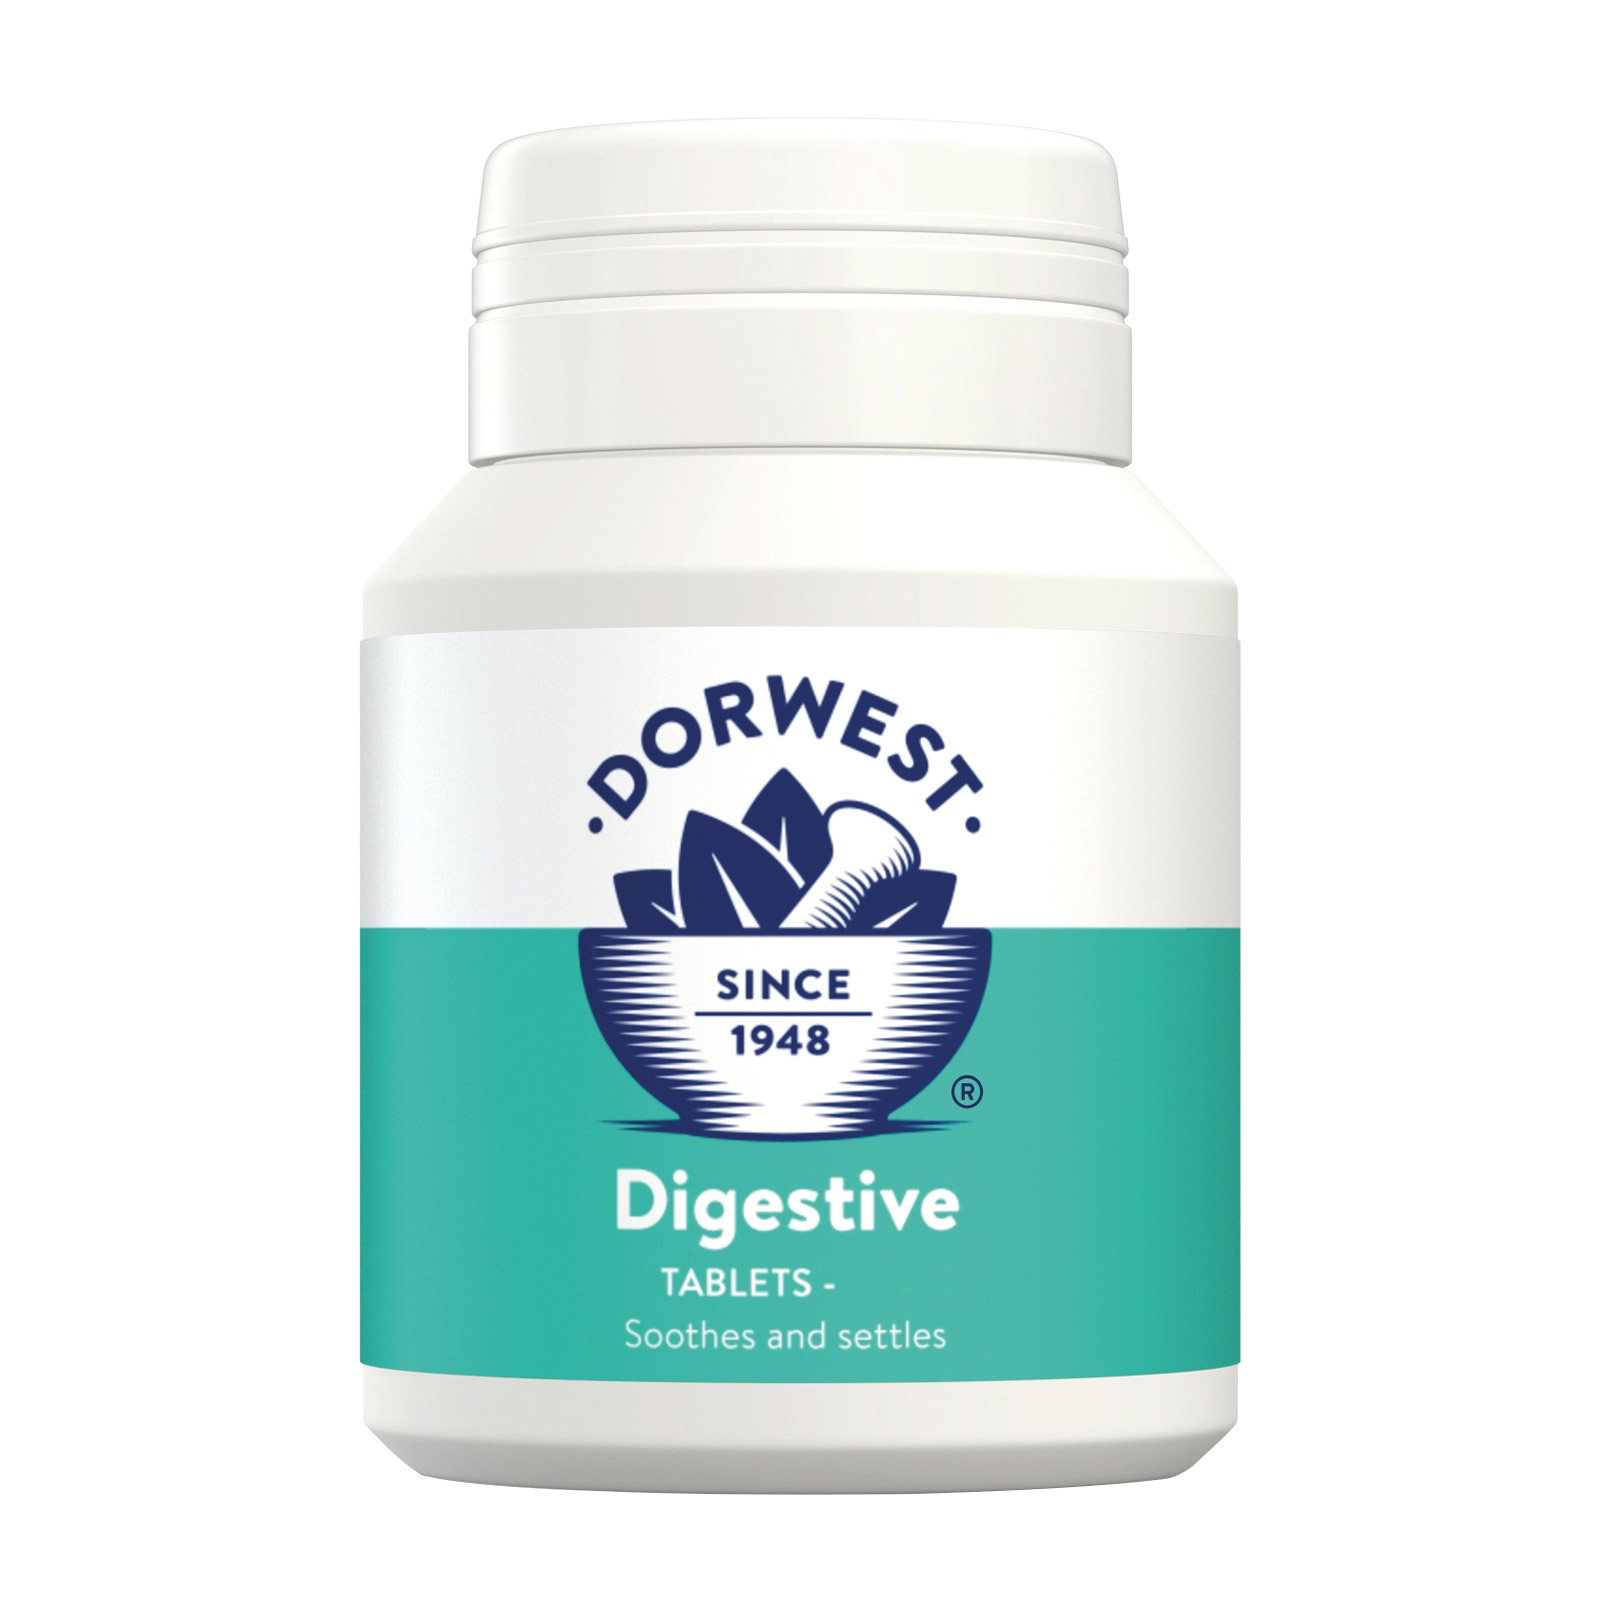 Dorwest Digestive Tablets